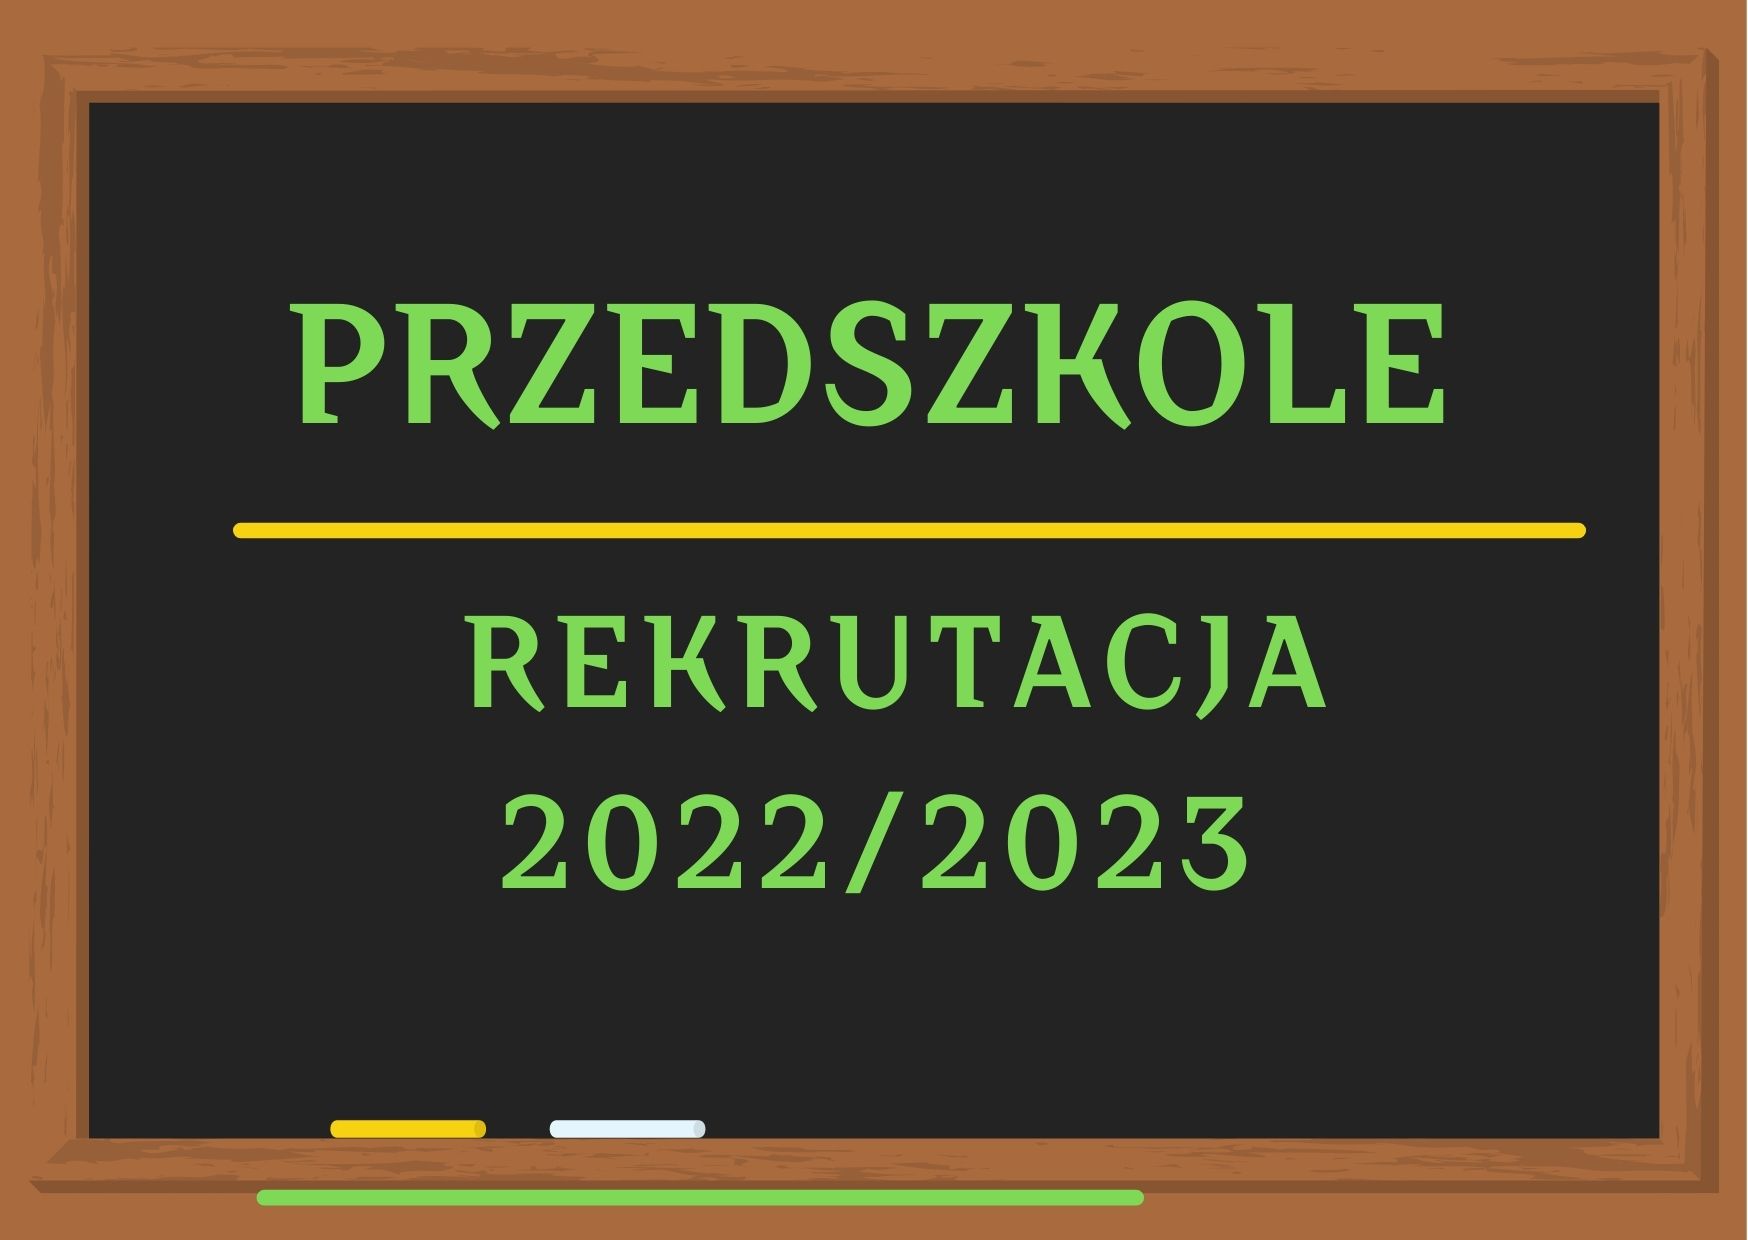 Rekrutacja 2022/2023 - PRZEDSZKOLE